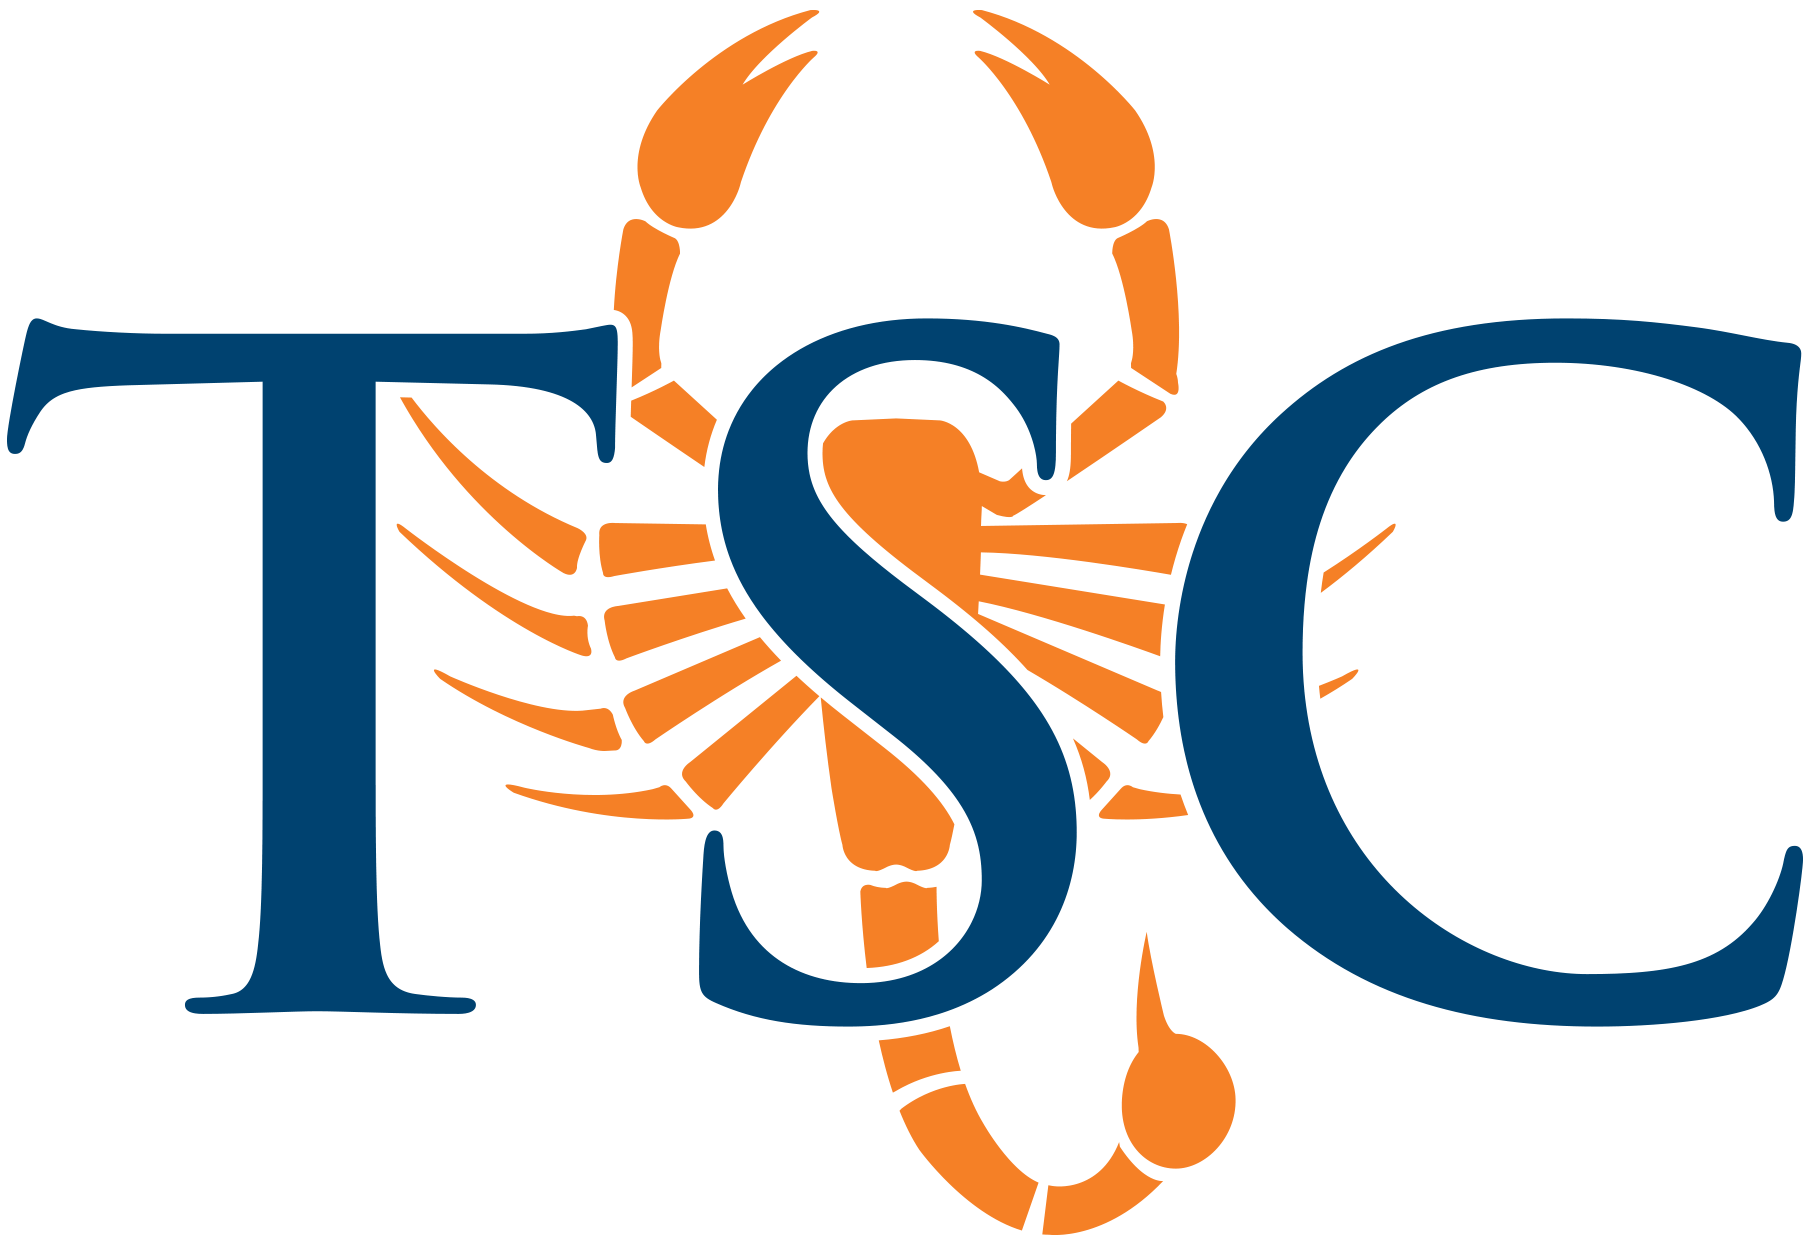 TSC Logo - Logos